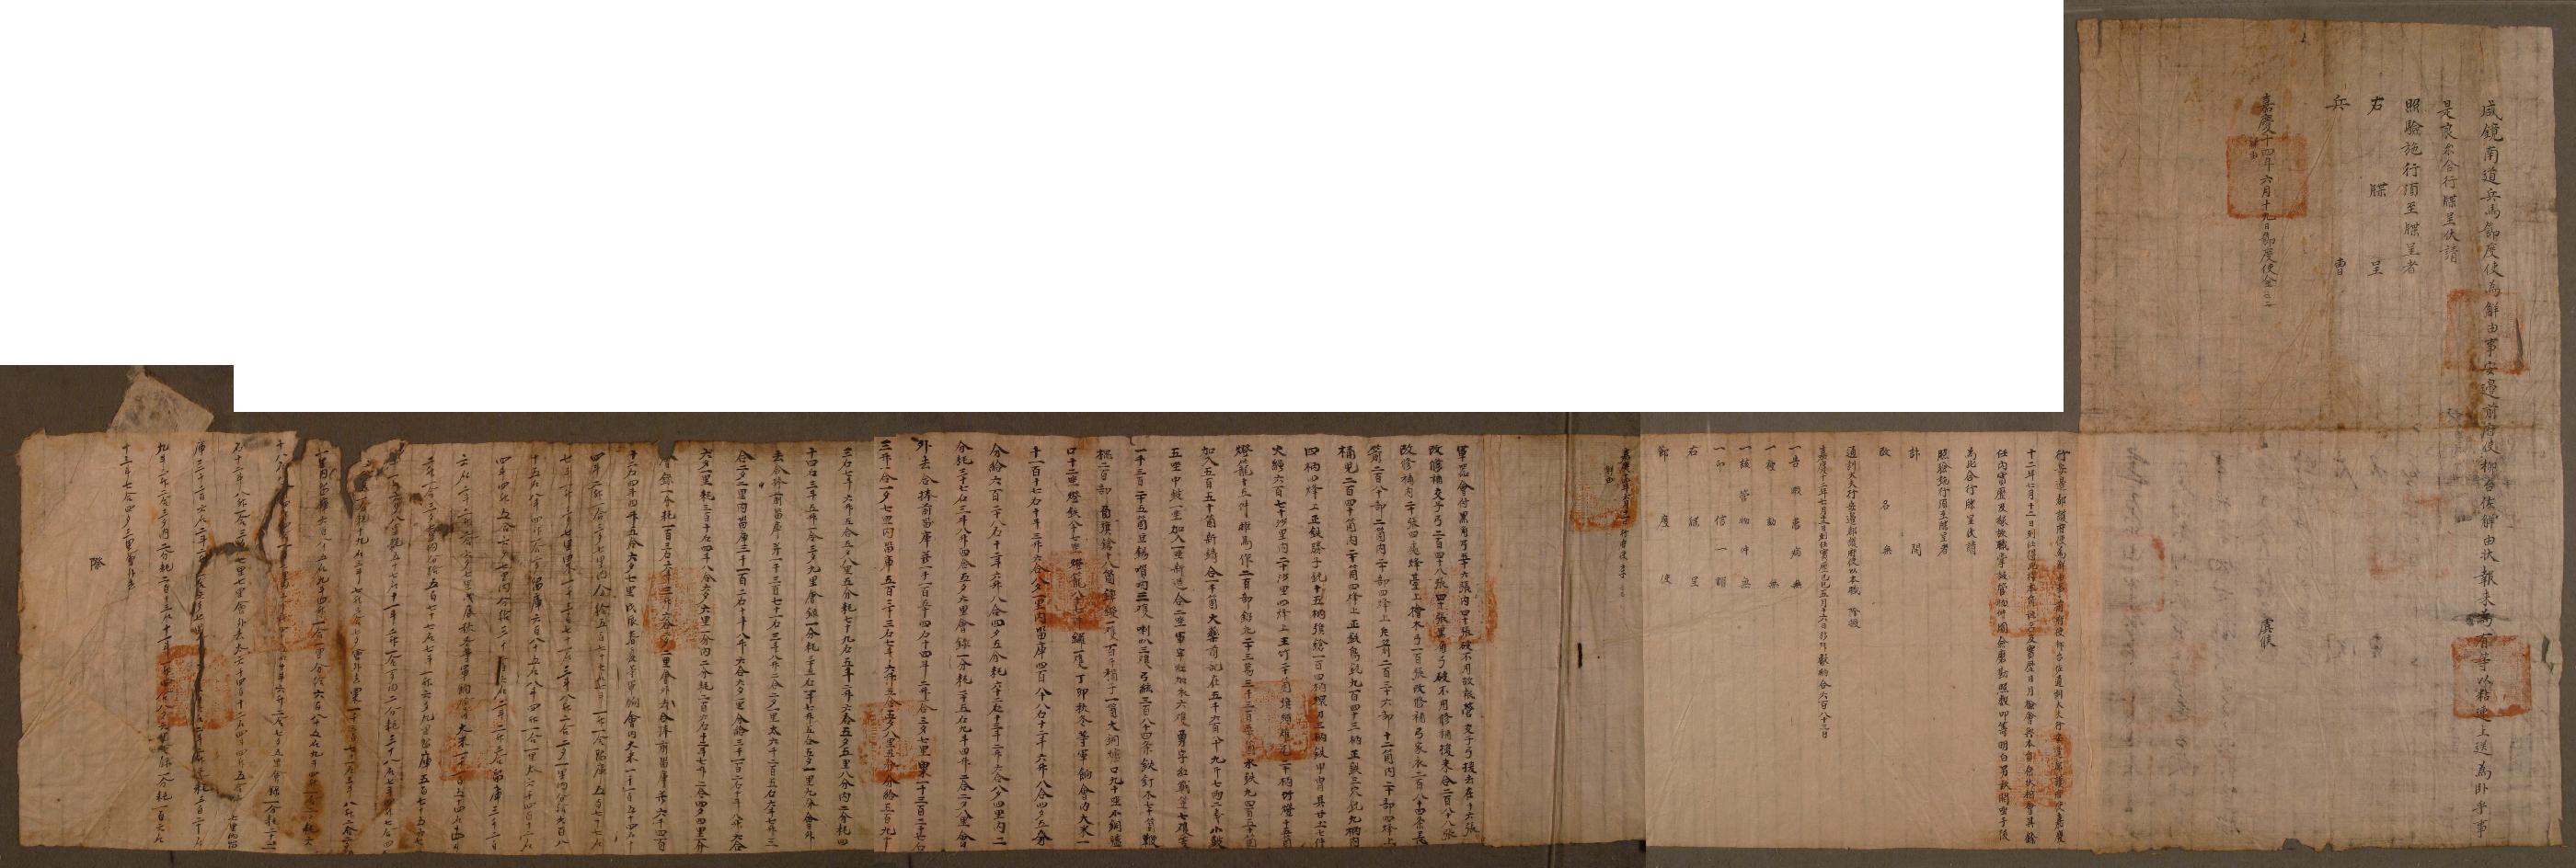 전안변도호부사(前安邊都護府使) 류이좌(柳台佐)가 1809년에 작성한 해유문서